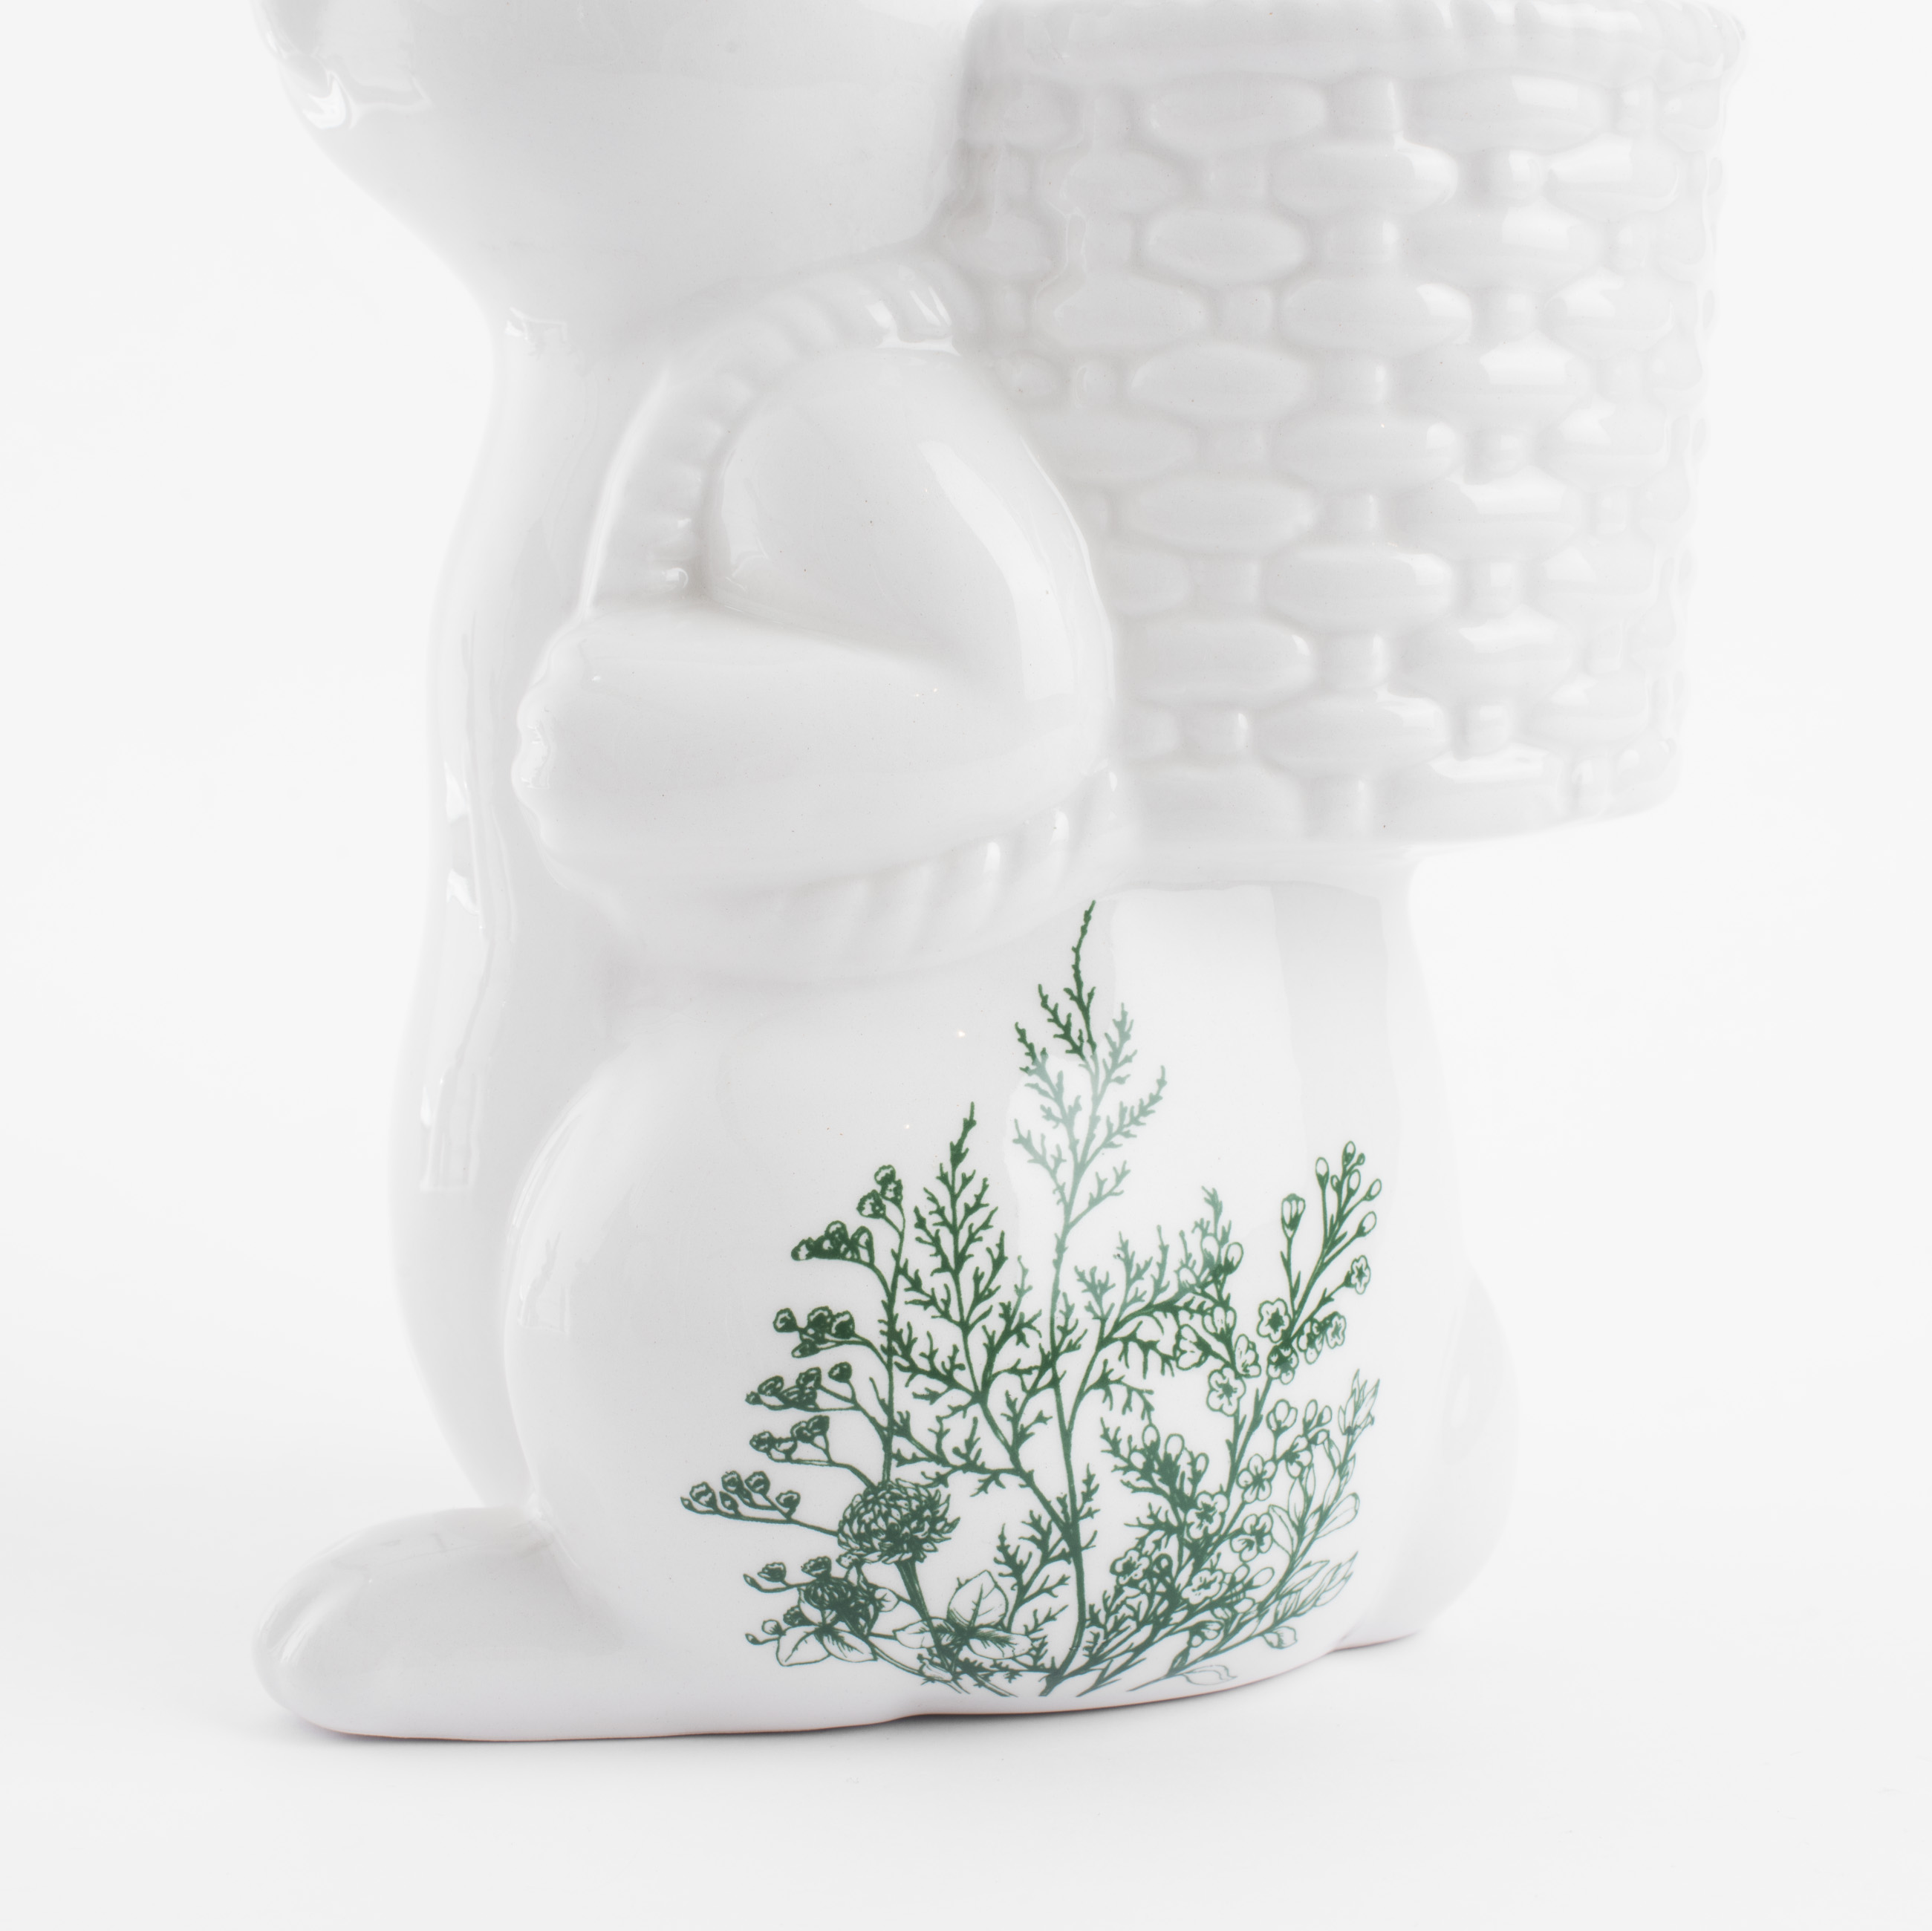 Ваза для цветов, 22 см, декоративная, керамика, бело-зеленая, Кролик с корзиной, Easter blooming изображение № 4